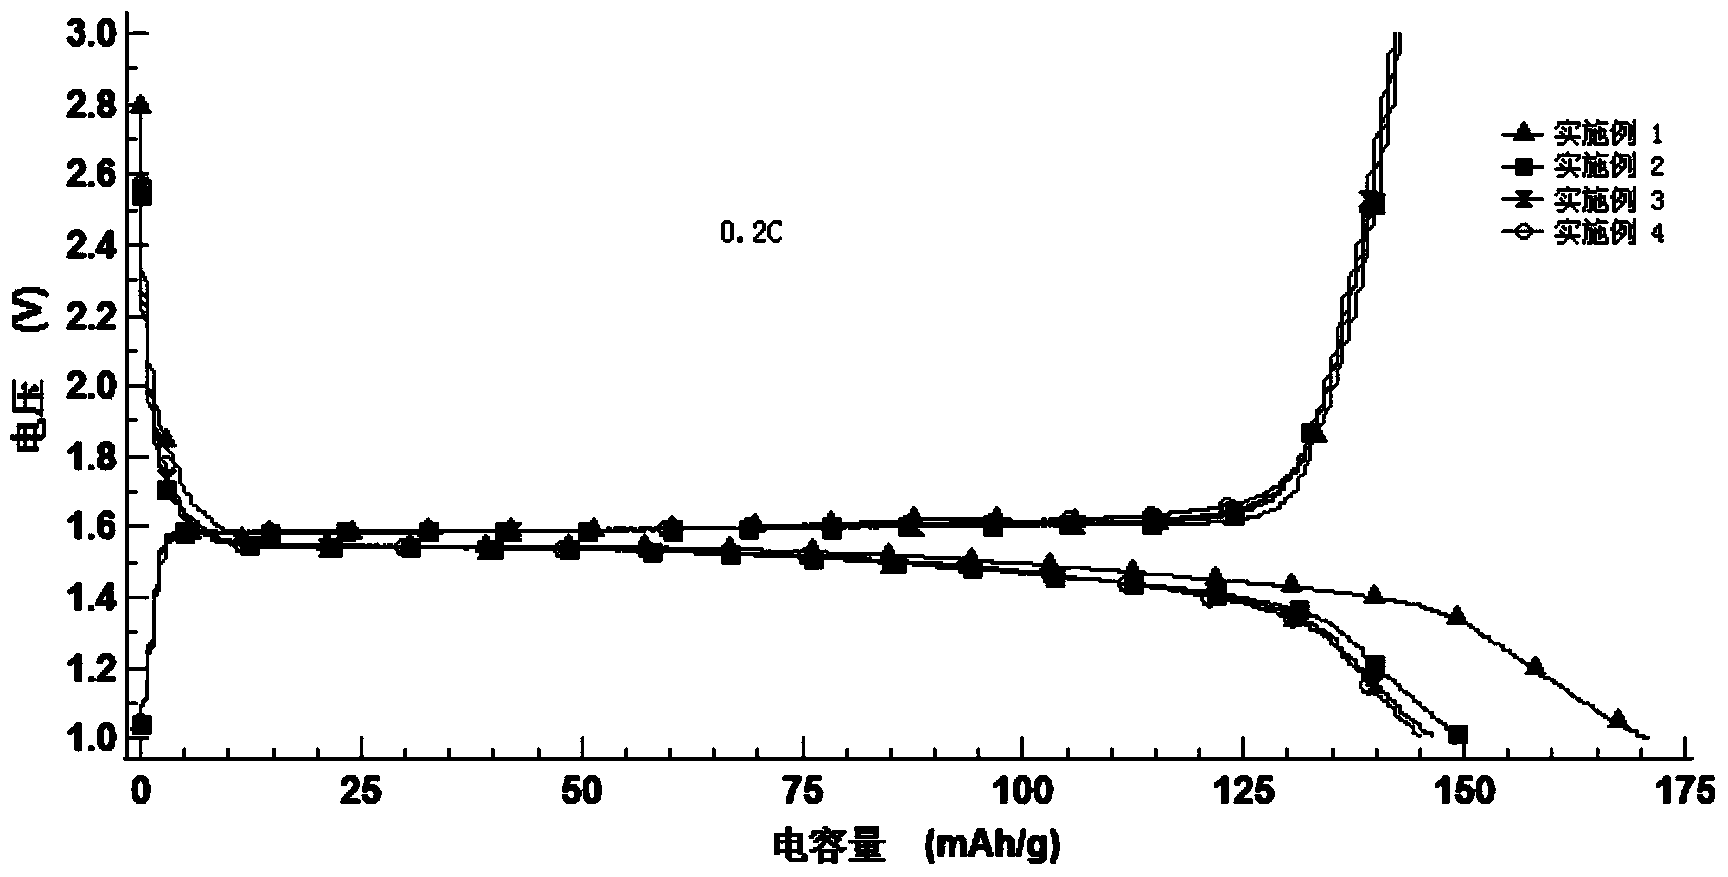 Sol-gel method for preparing lithium titanate